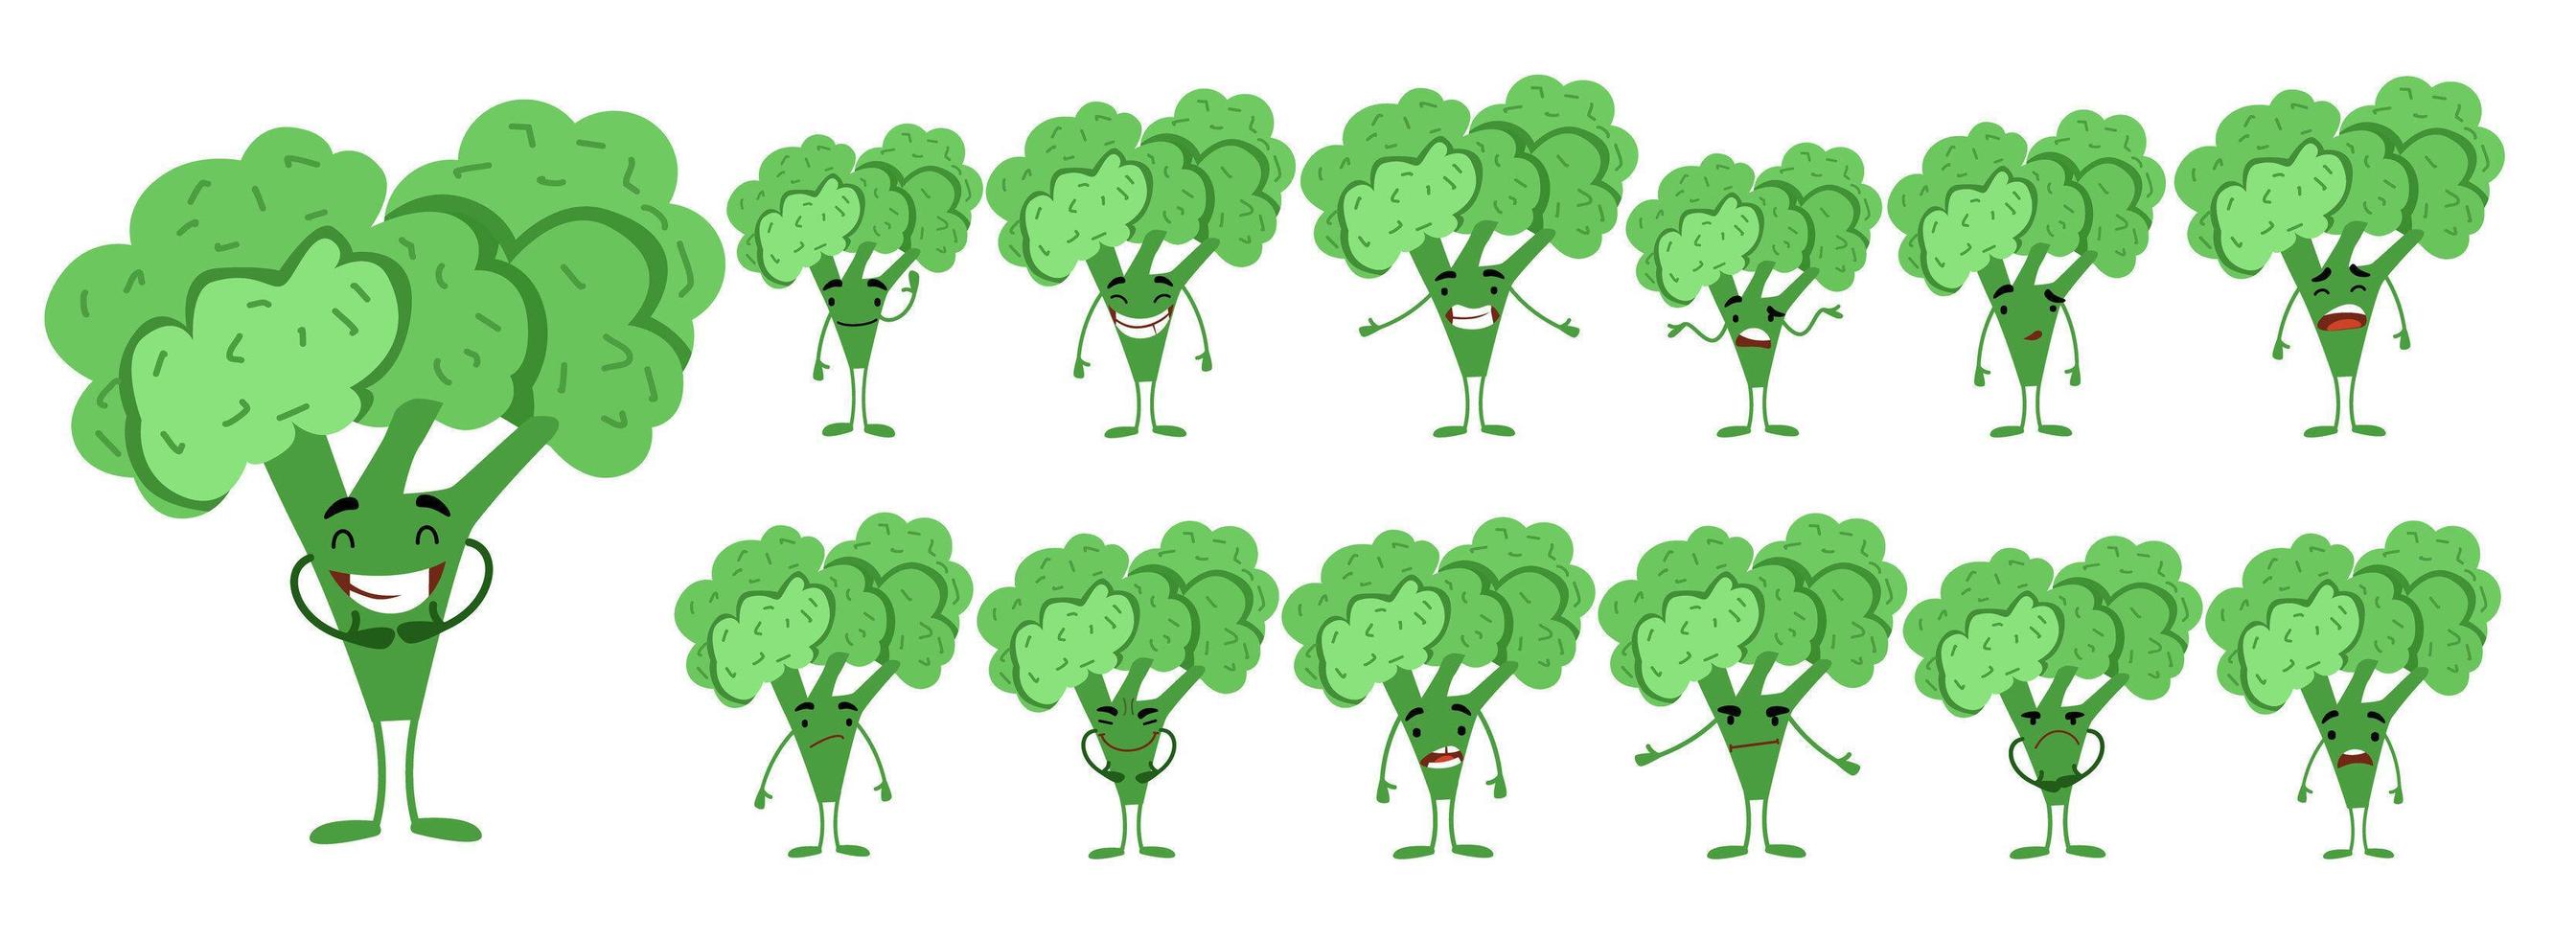 seth è un simpatico personaggio di broccoli con diverse emozioni. vettore